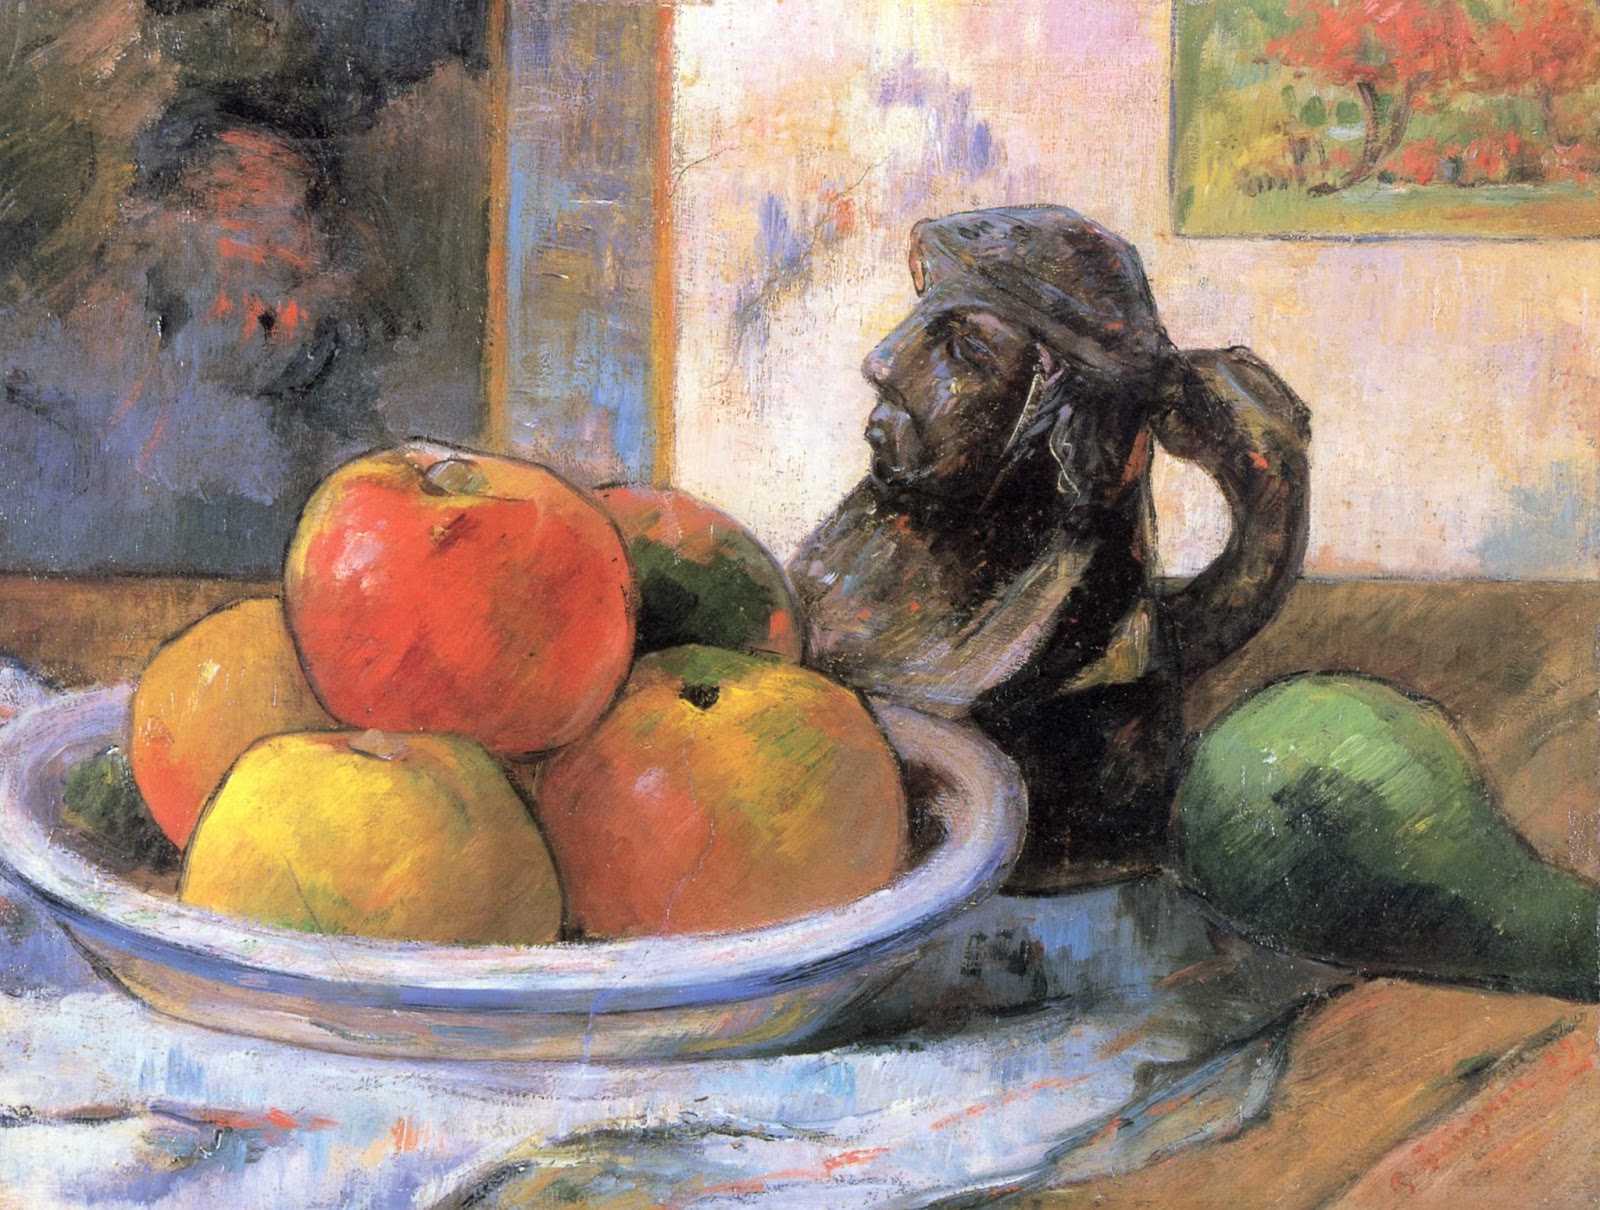 Paul+Gauguin-1848-1903 (340).jpg